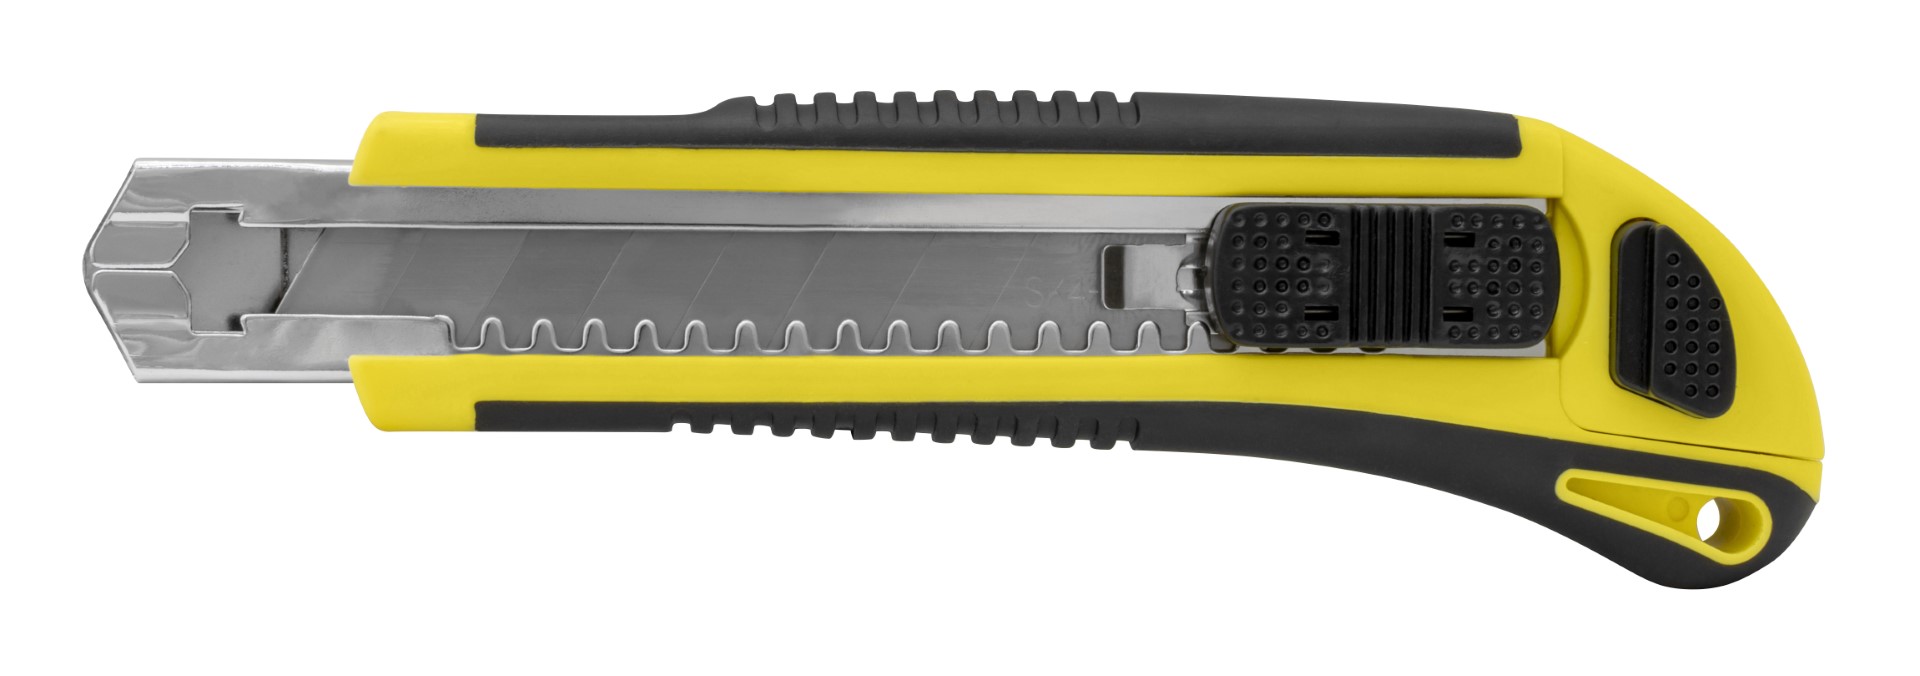 Kniv med Non-Slip GummiGrep, 18 mm Blad, Automatisk Lås og Magasin 2 Ekstra Knivblader 410001